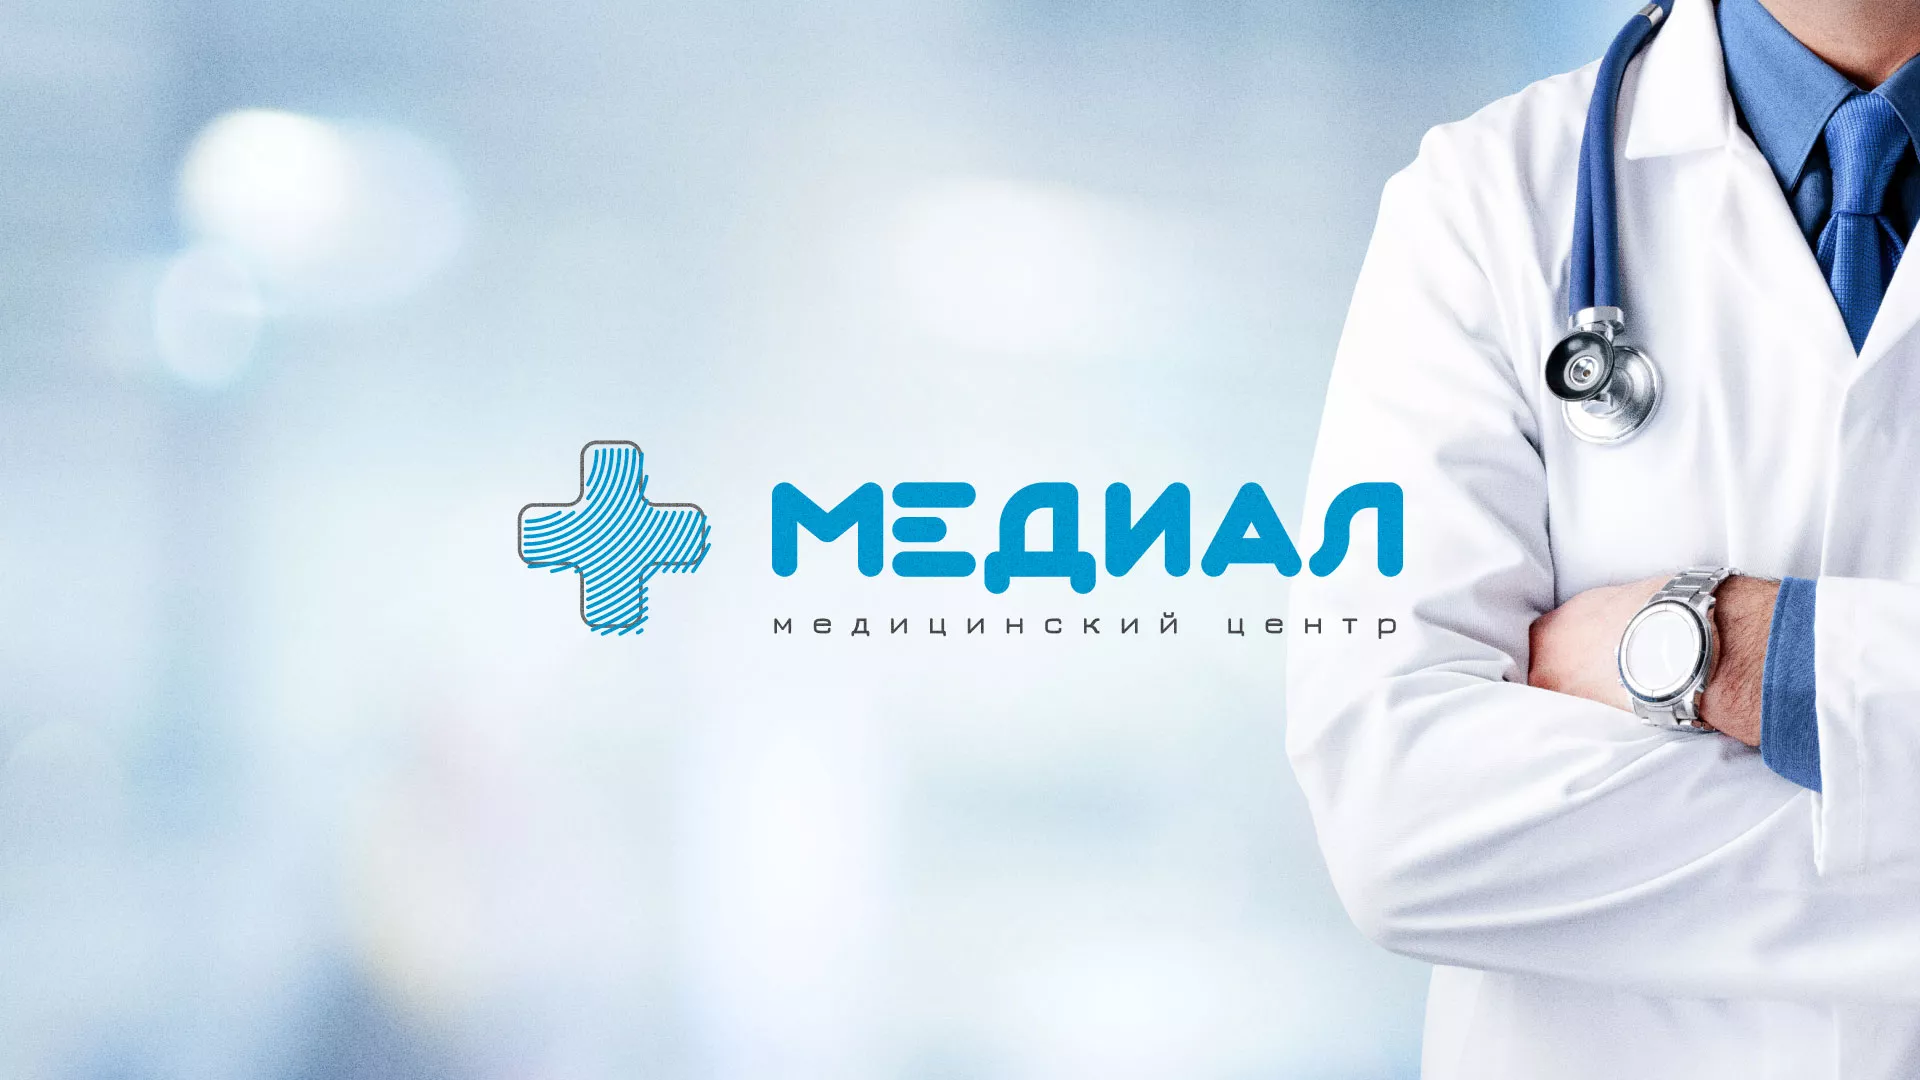 Создание сайта для медицинского центра «Медиал» в Усть-Лабинске